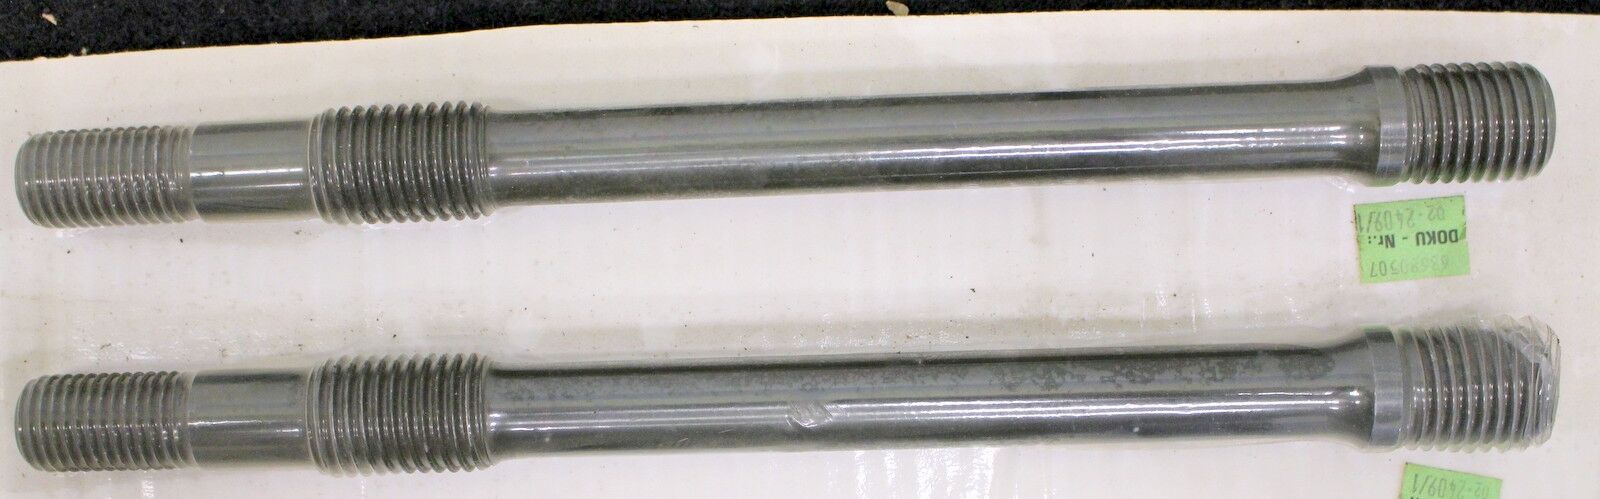 KSB 2 Stiftschrauben für Reaktor-Faltenbalg-Ventil NUCA320 Typ IV-310 DN50